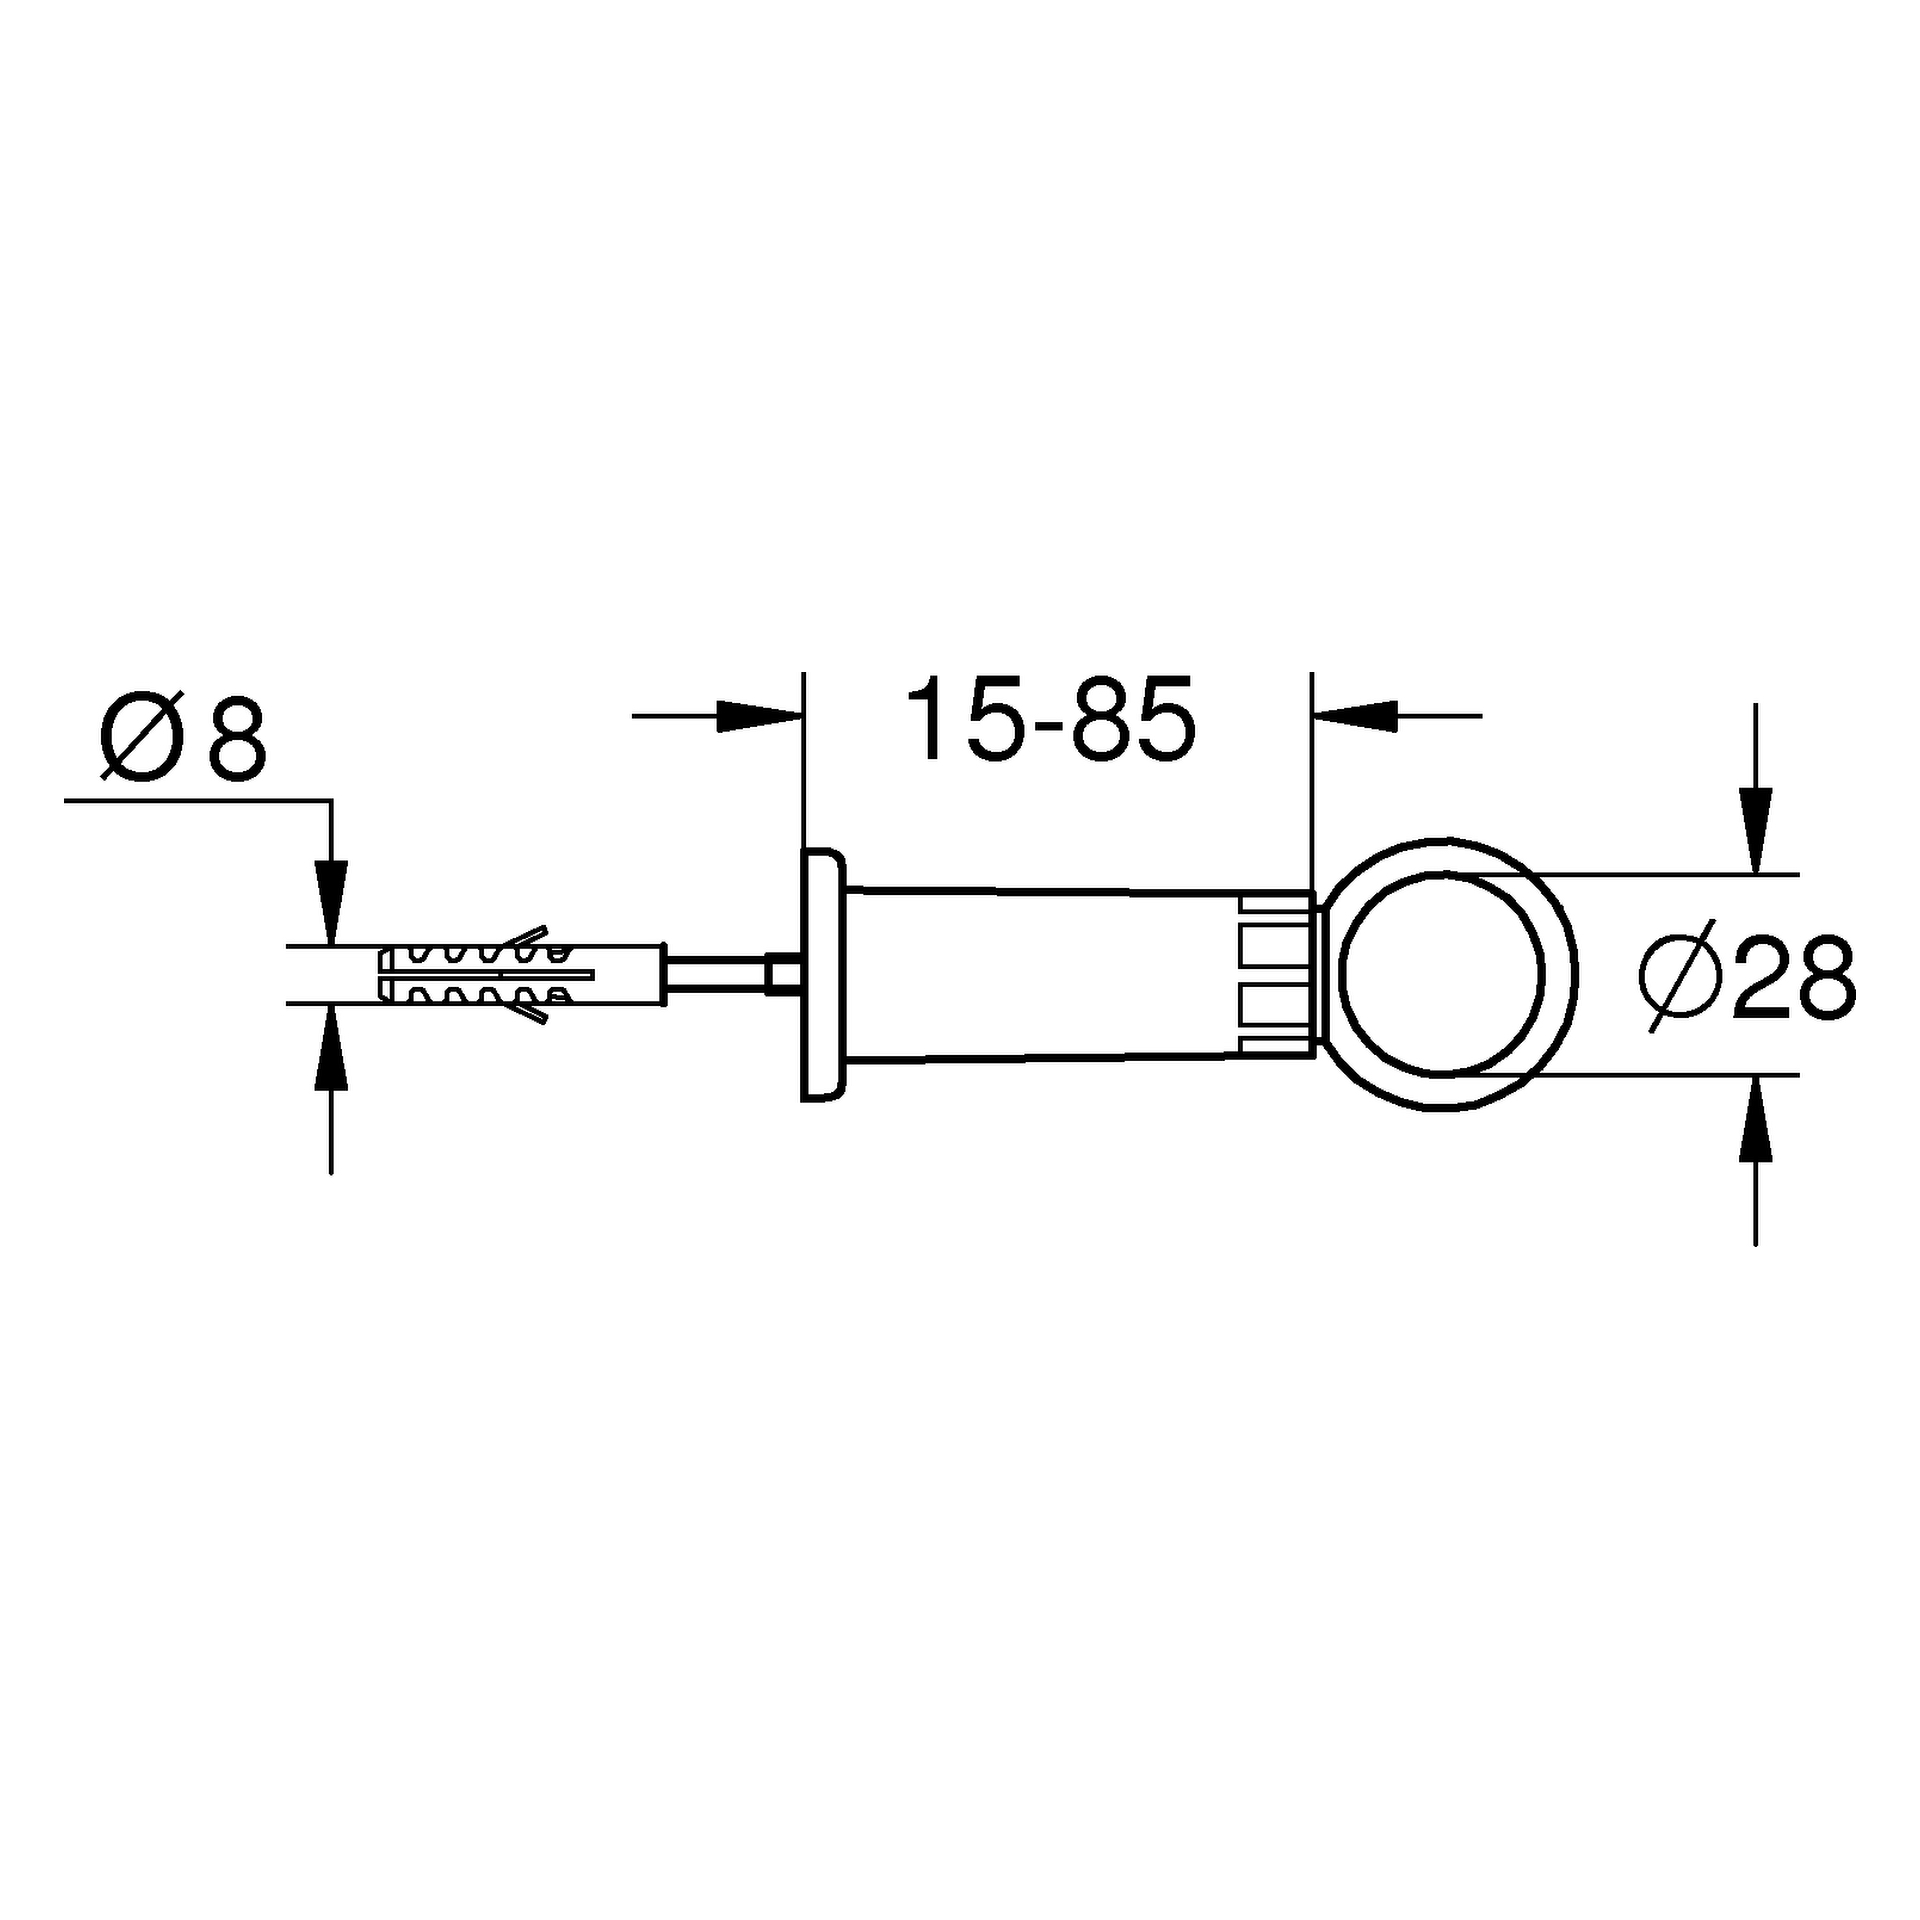 Spülrohrschelle 37132, für Spülrohr ⌀ 28 mm, für Wandabstand 15 - 85 mm, chrom